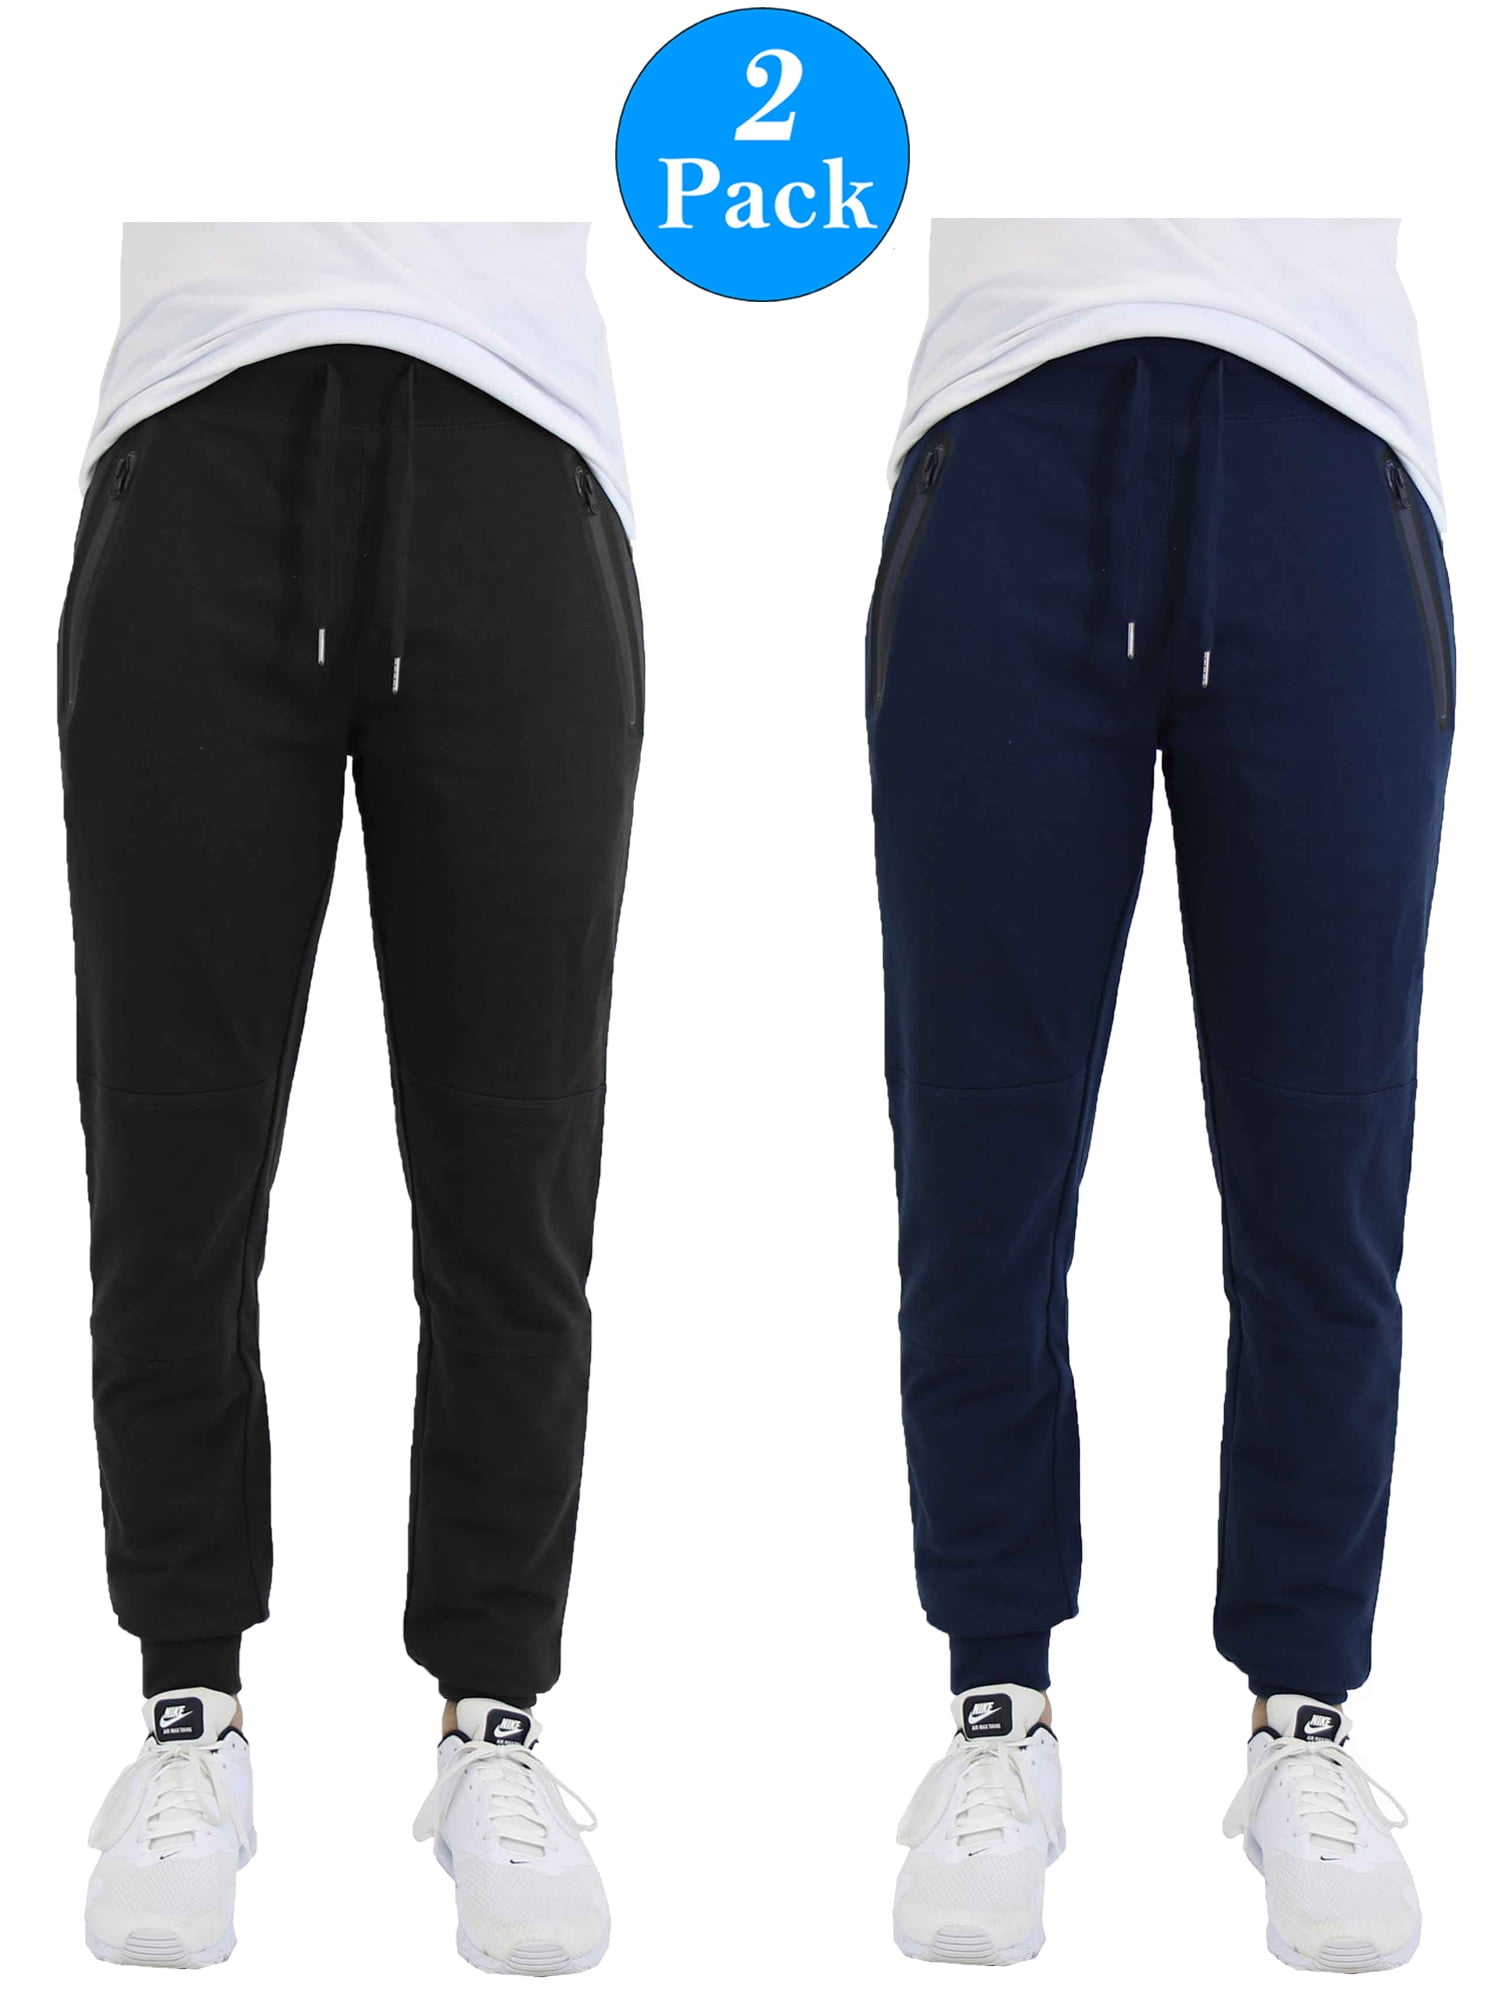 Men's Jogger Sweatpants With Zipper Pockets (2-Pack) - Walmart.com